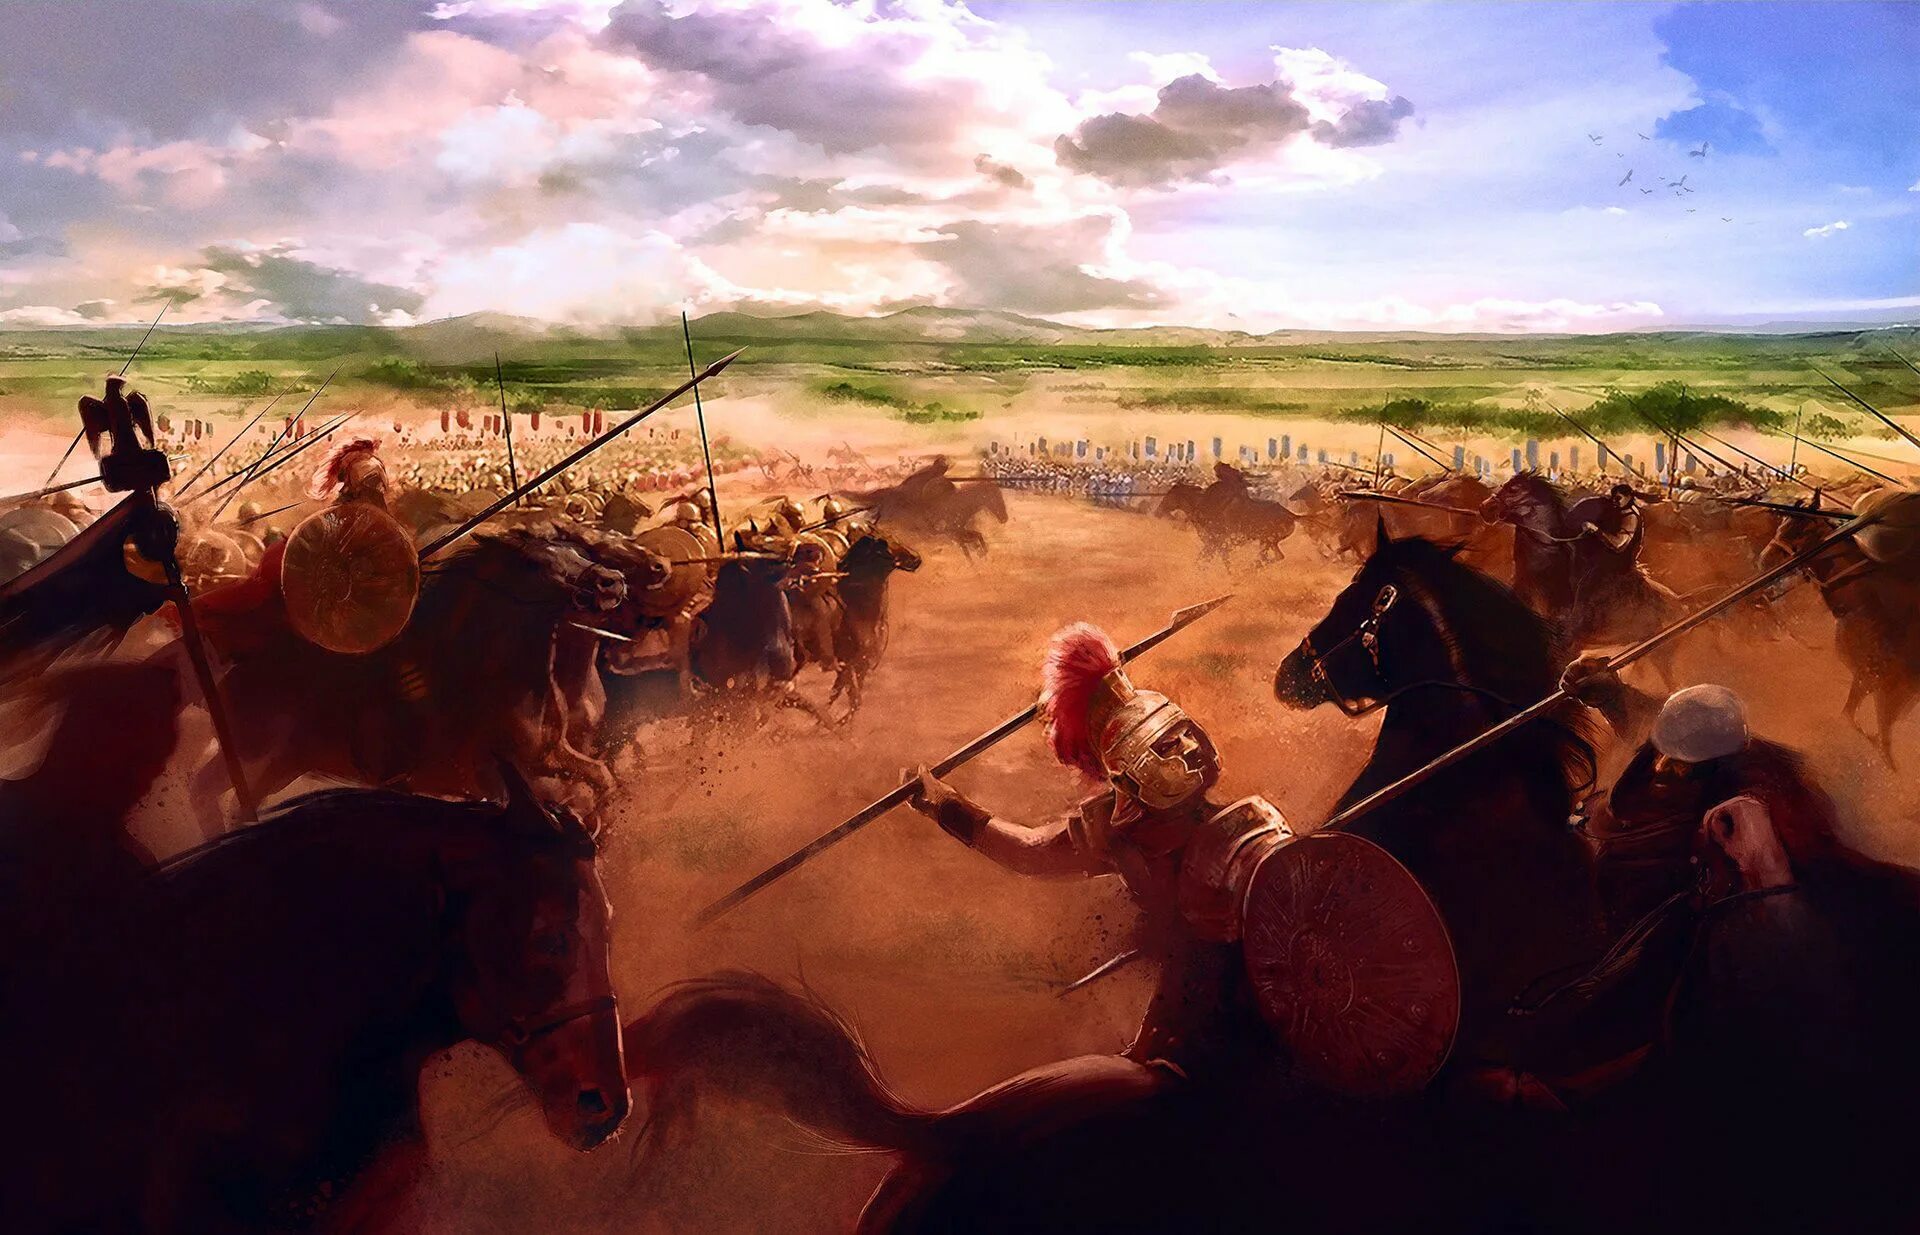 Ганнибал битва при Каннах. Битва при Каннах 216 год до н.э. Ганнибалбтва при Каннах. Ганнибал Барка битва при Каннах. Как каннибалу удалось выиграть битву при каннах